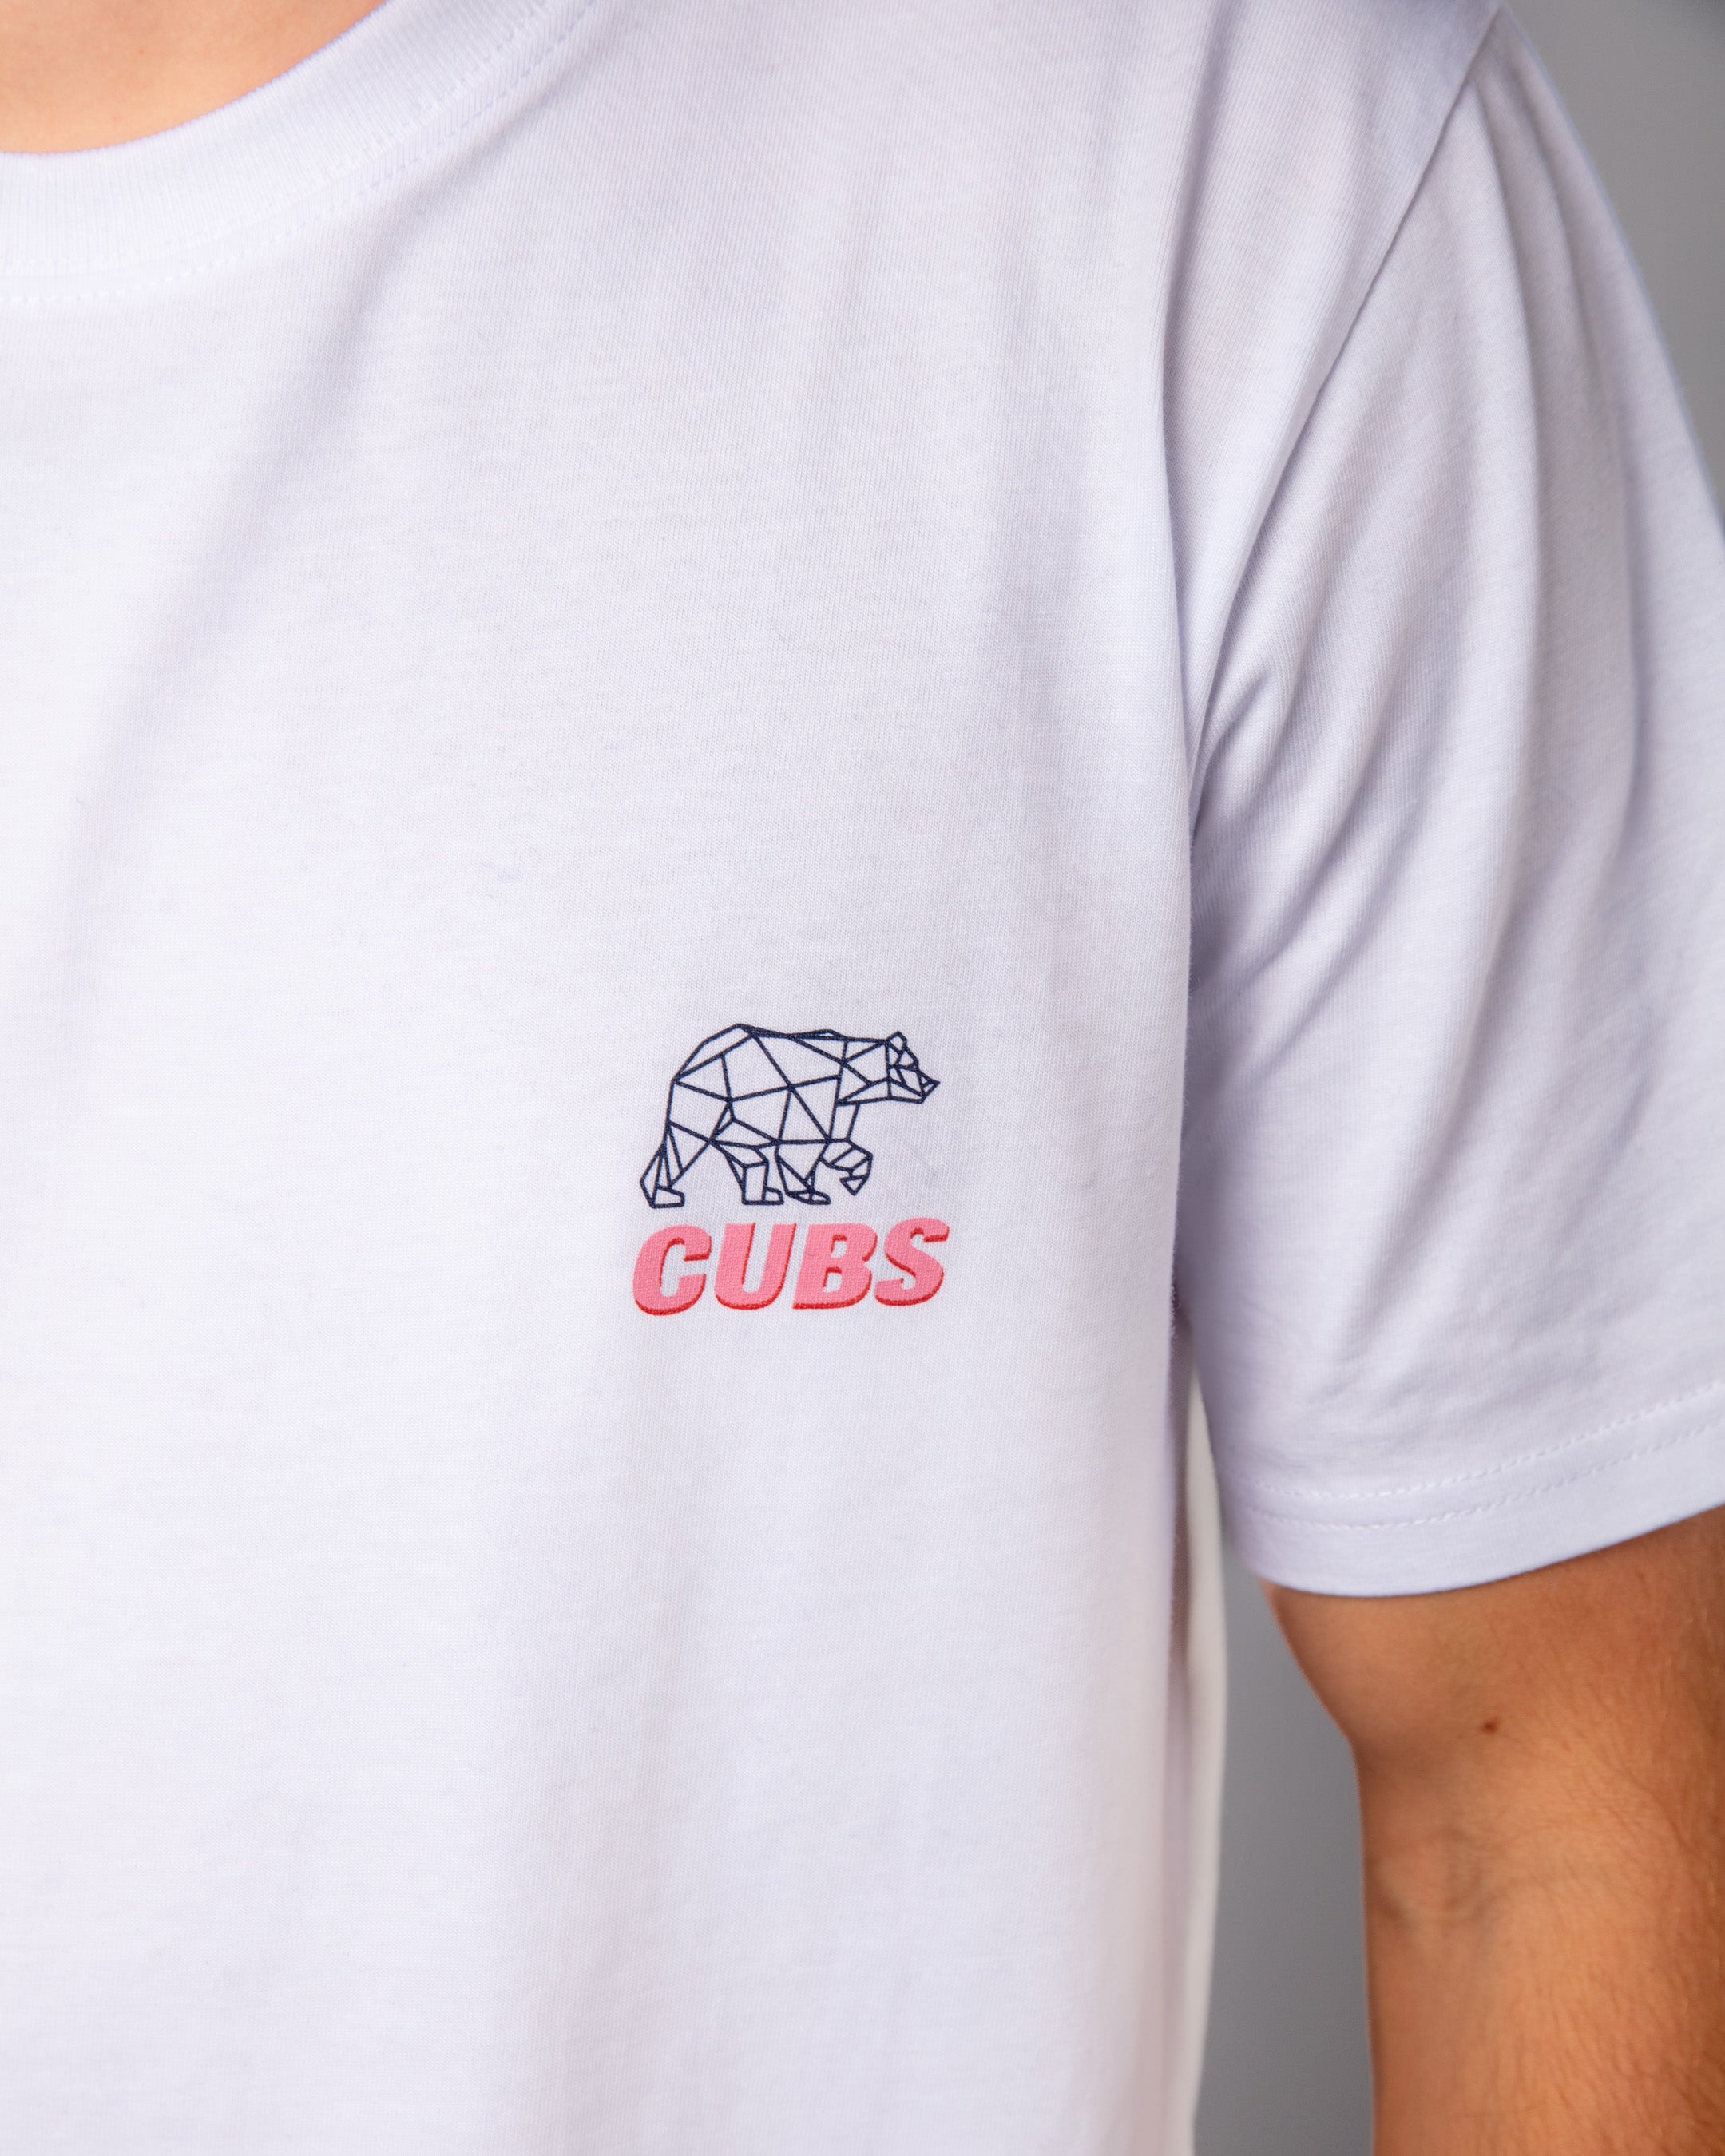 Cubs Trail Running T-Shirt